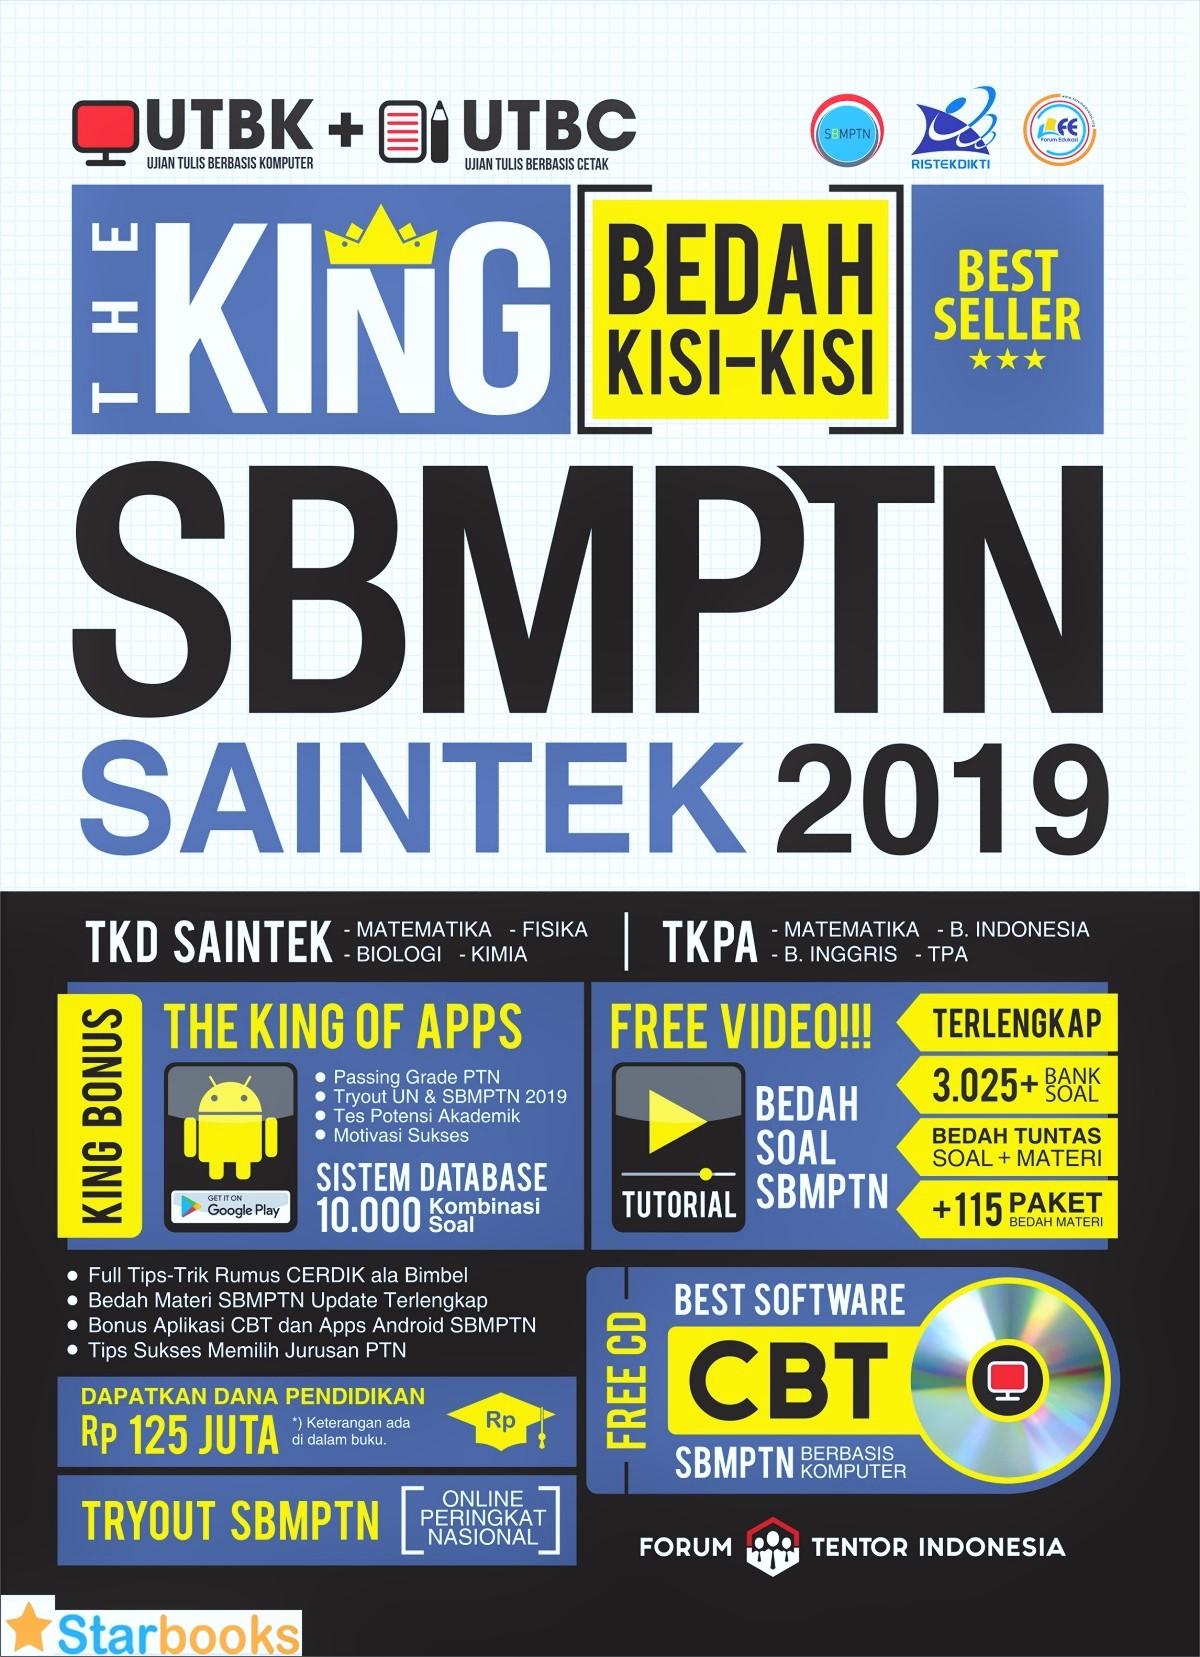 THE KING BEDAH KISI2 SBMPTN SAINTEK 2019 CD